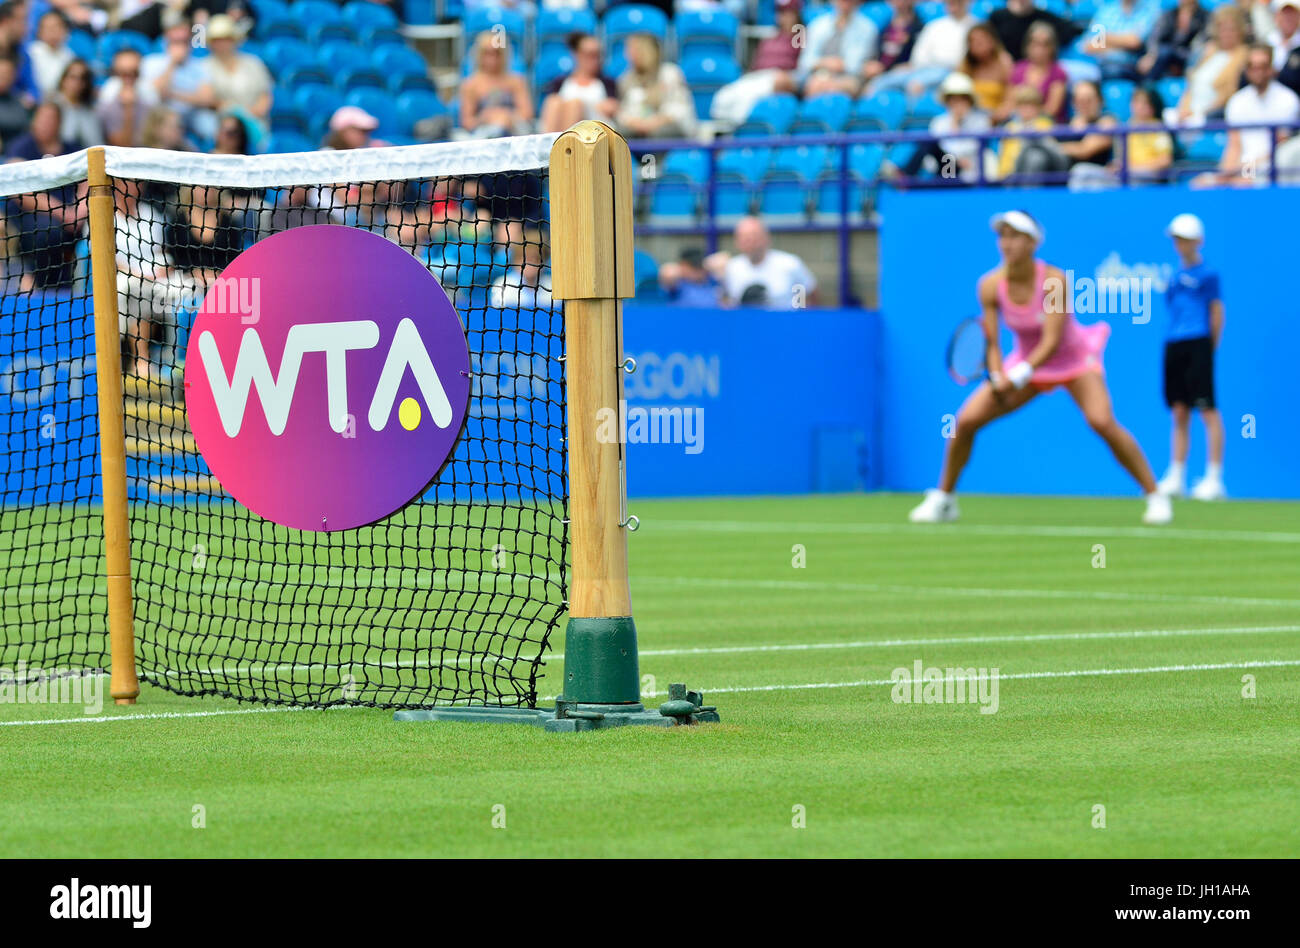 Il WTA (femminile di Tennis Association) il logo sul net presso il Aegon International, Devonshire Park, Eastbourne 2017 Foto Stock